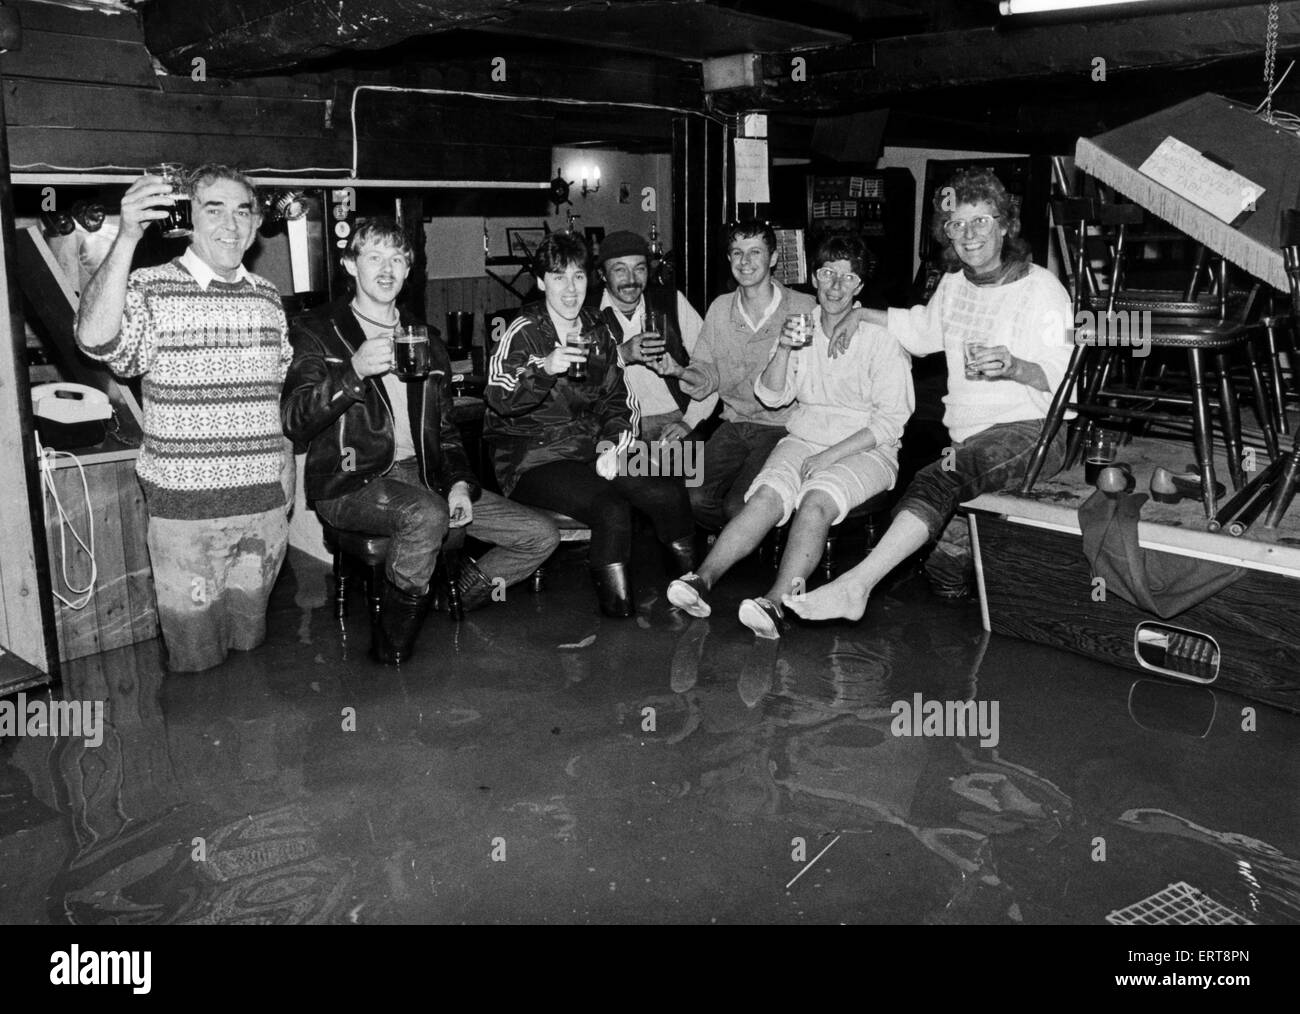 Le persone godono di un drink nei loro pub locale nonostante le tempeste che hanno colpito il Galles il 15 ottobre 1987, il peggiore in quasi 300 anni. Circa Ottobre 1987. Foto Stock